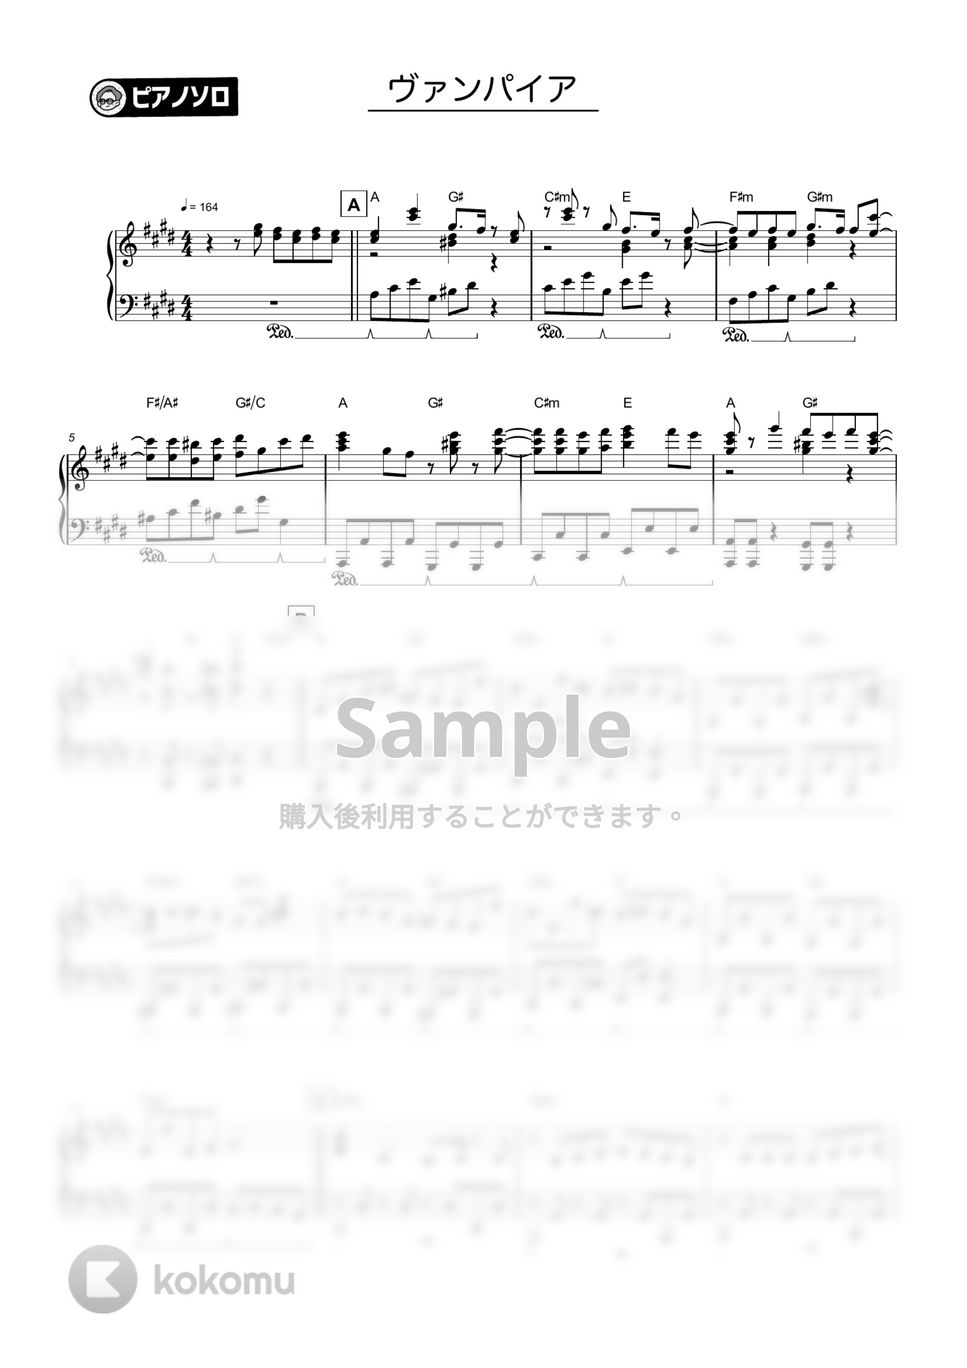 DECO*27 - ヴァンパイア by シータピアノ